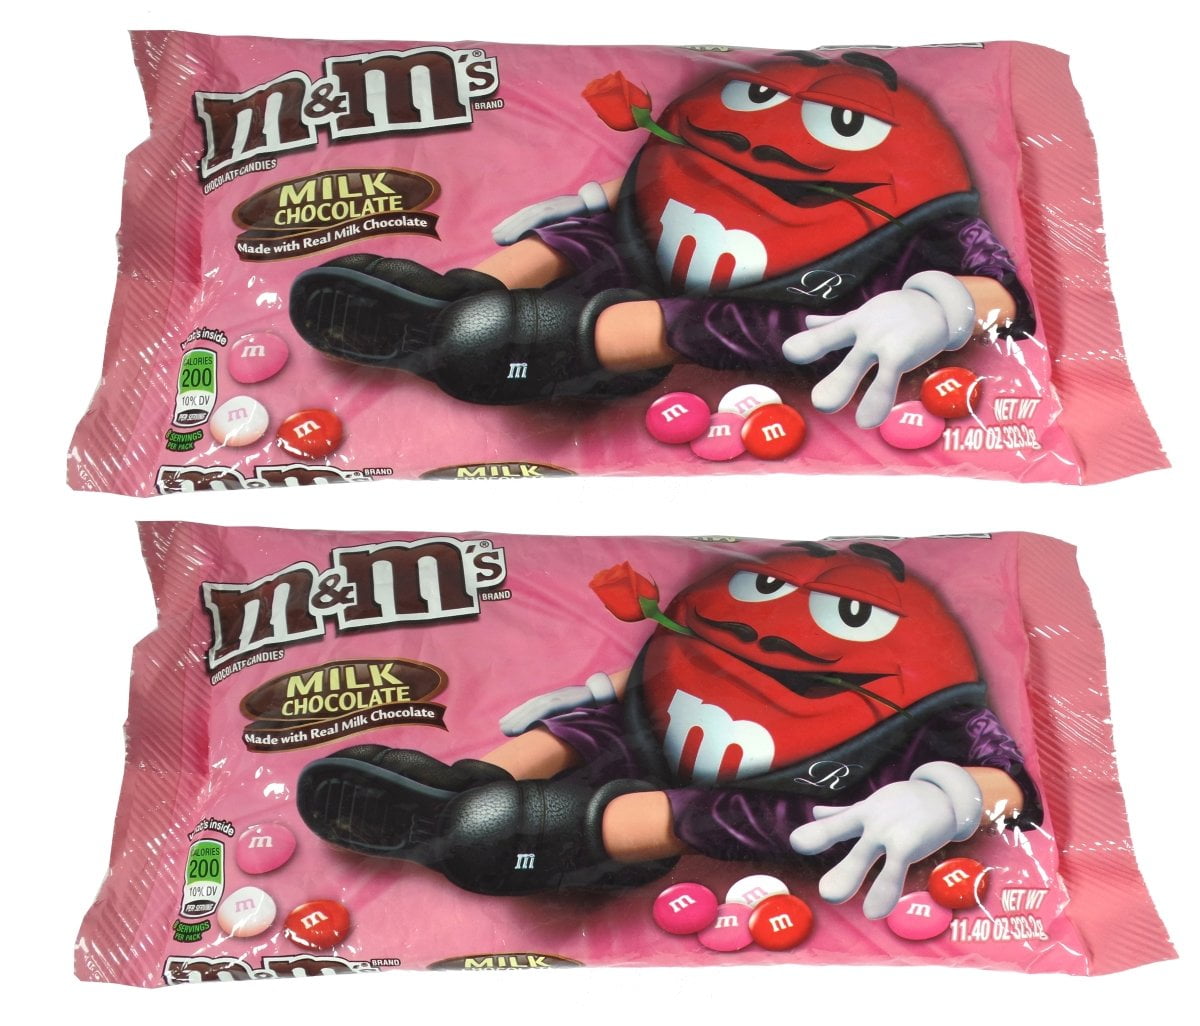  M&M'S Red Milk Chocolate Candy, 2lbs of M&M'S in